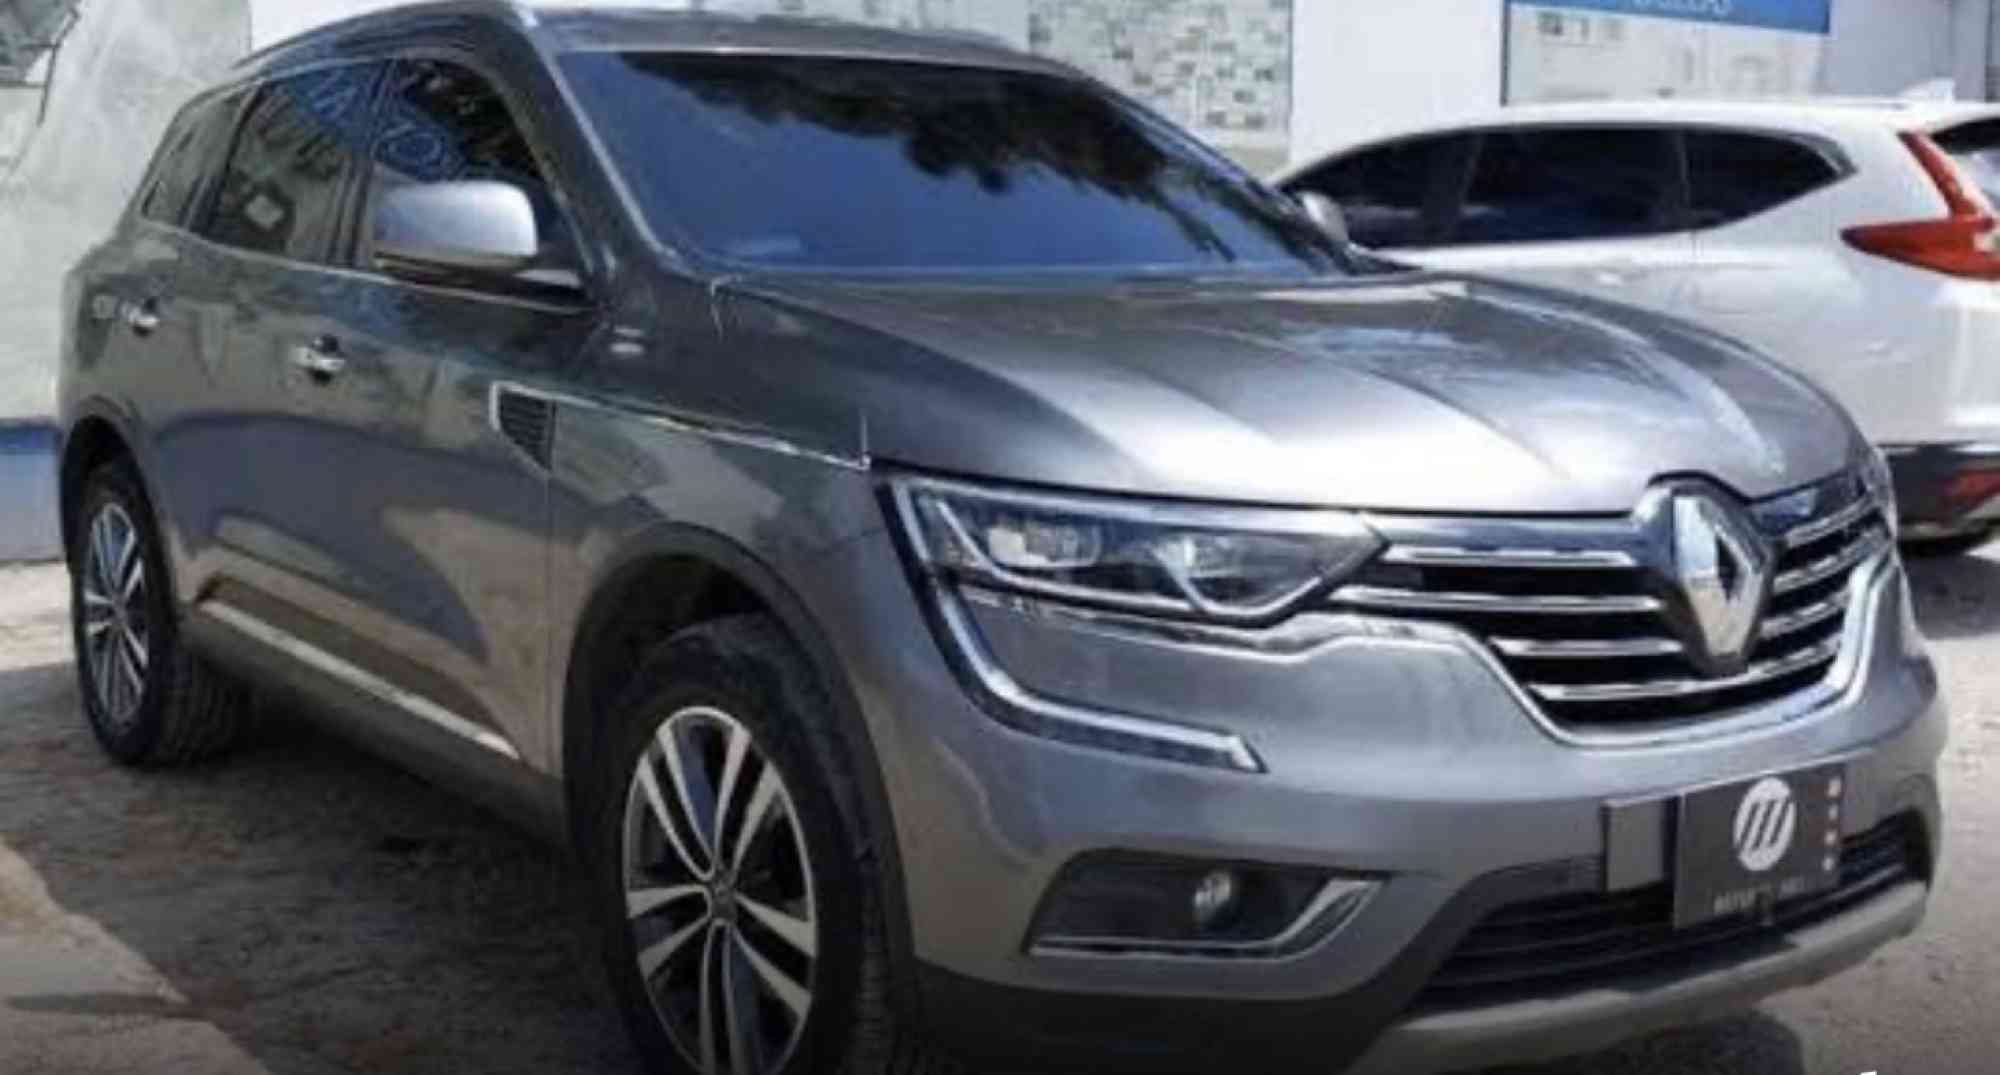 Venta de autos usados, Carros usados en venta - Todoclasificados, Renault Koleos 2018